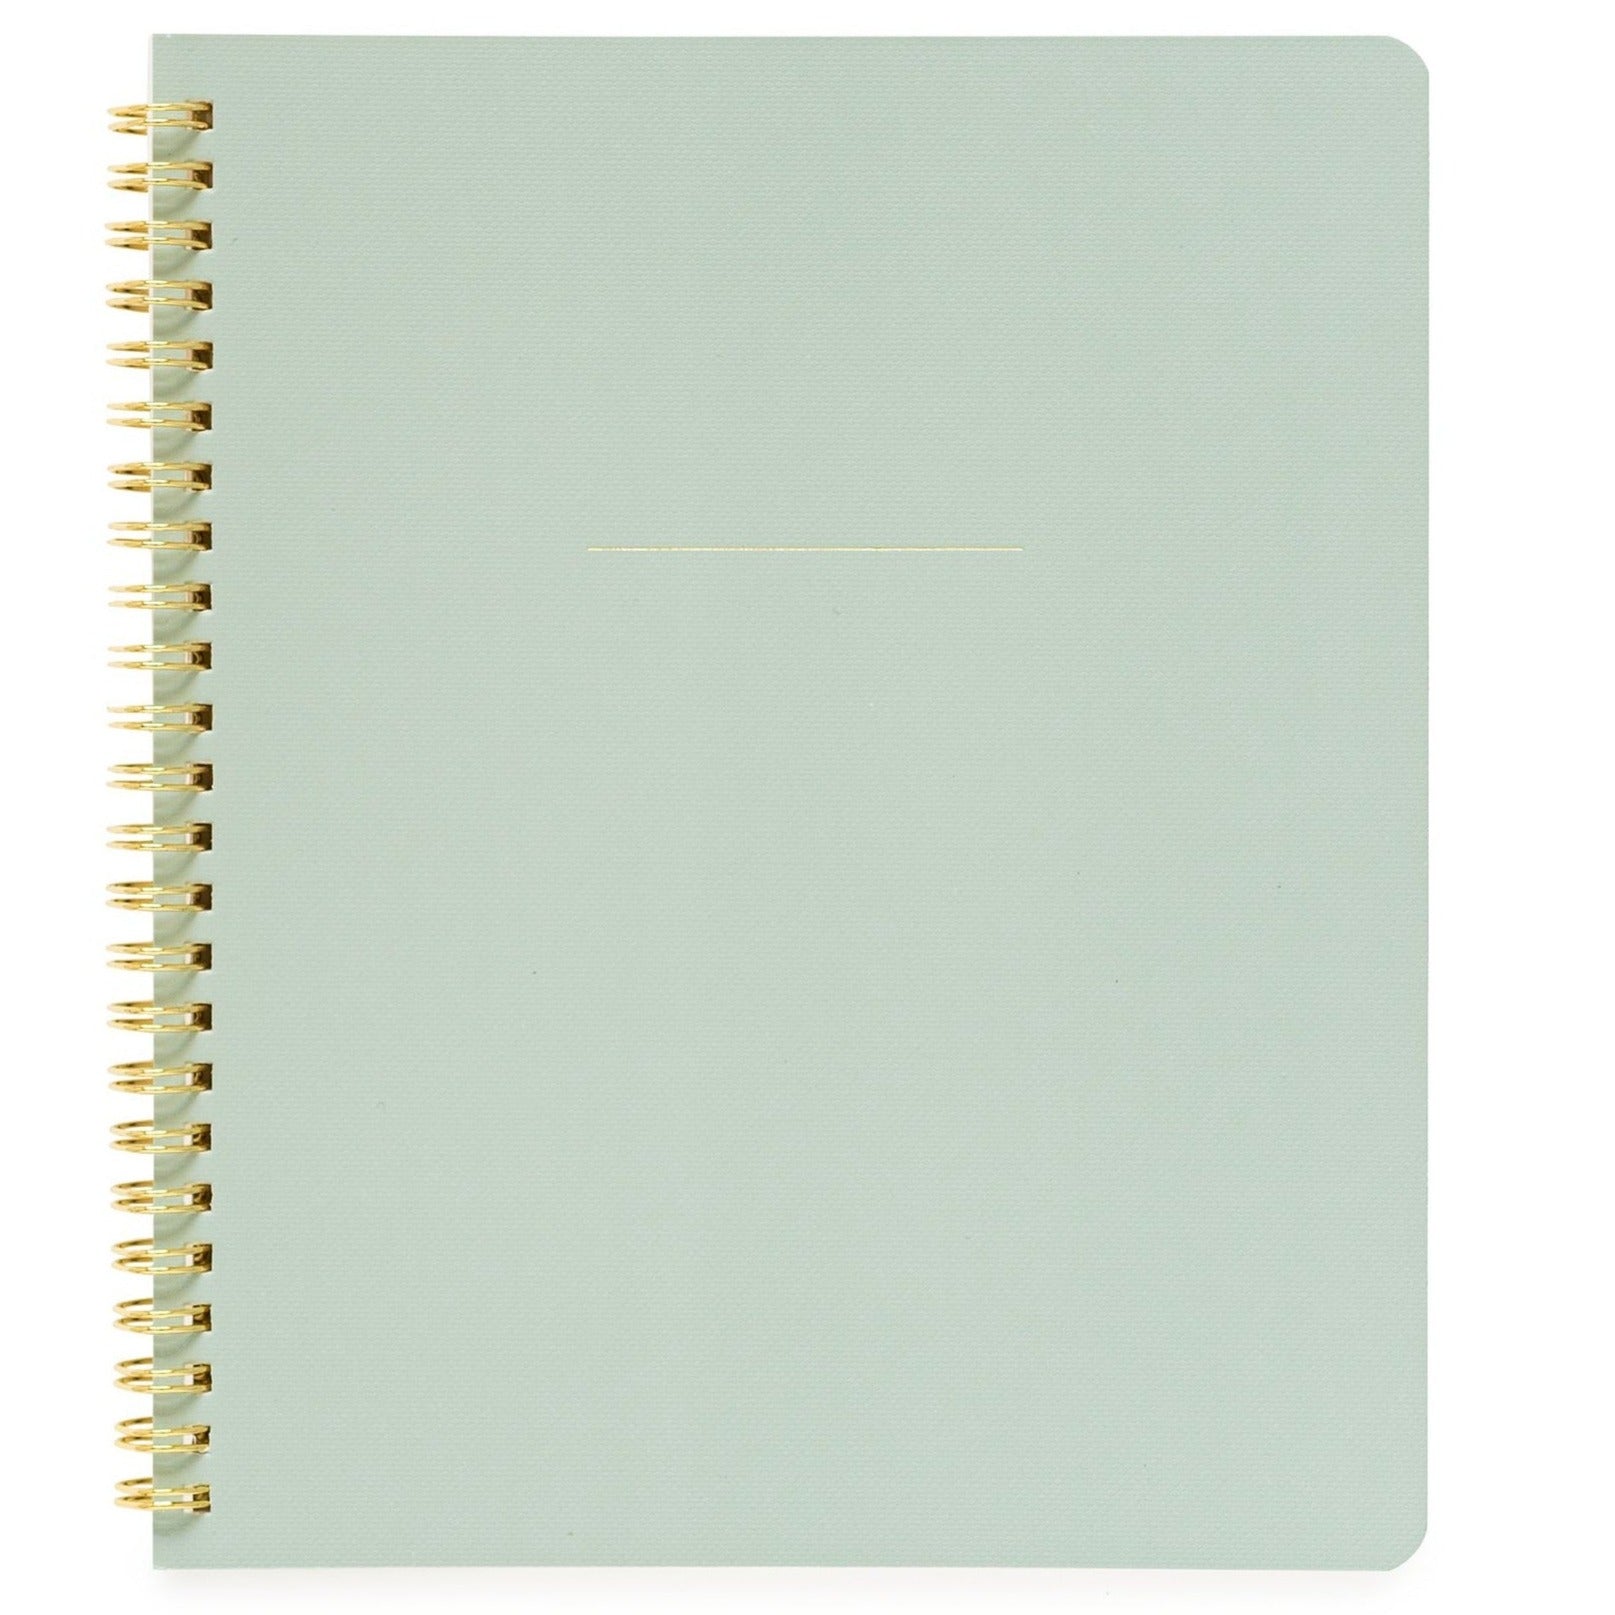 Office Green Spiral Notebook - BOXFOX